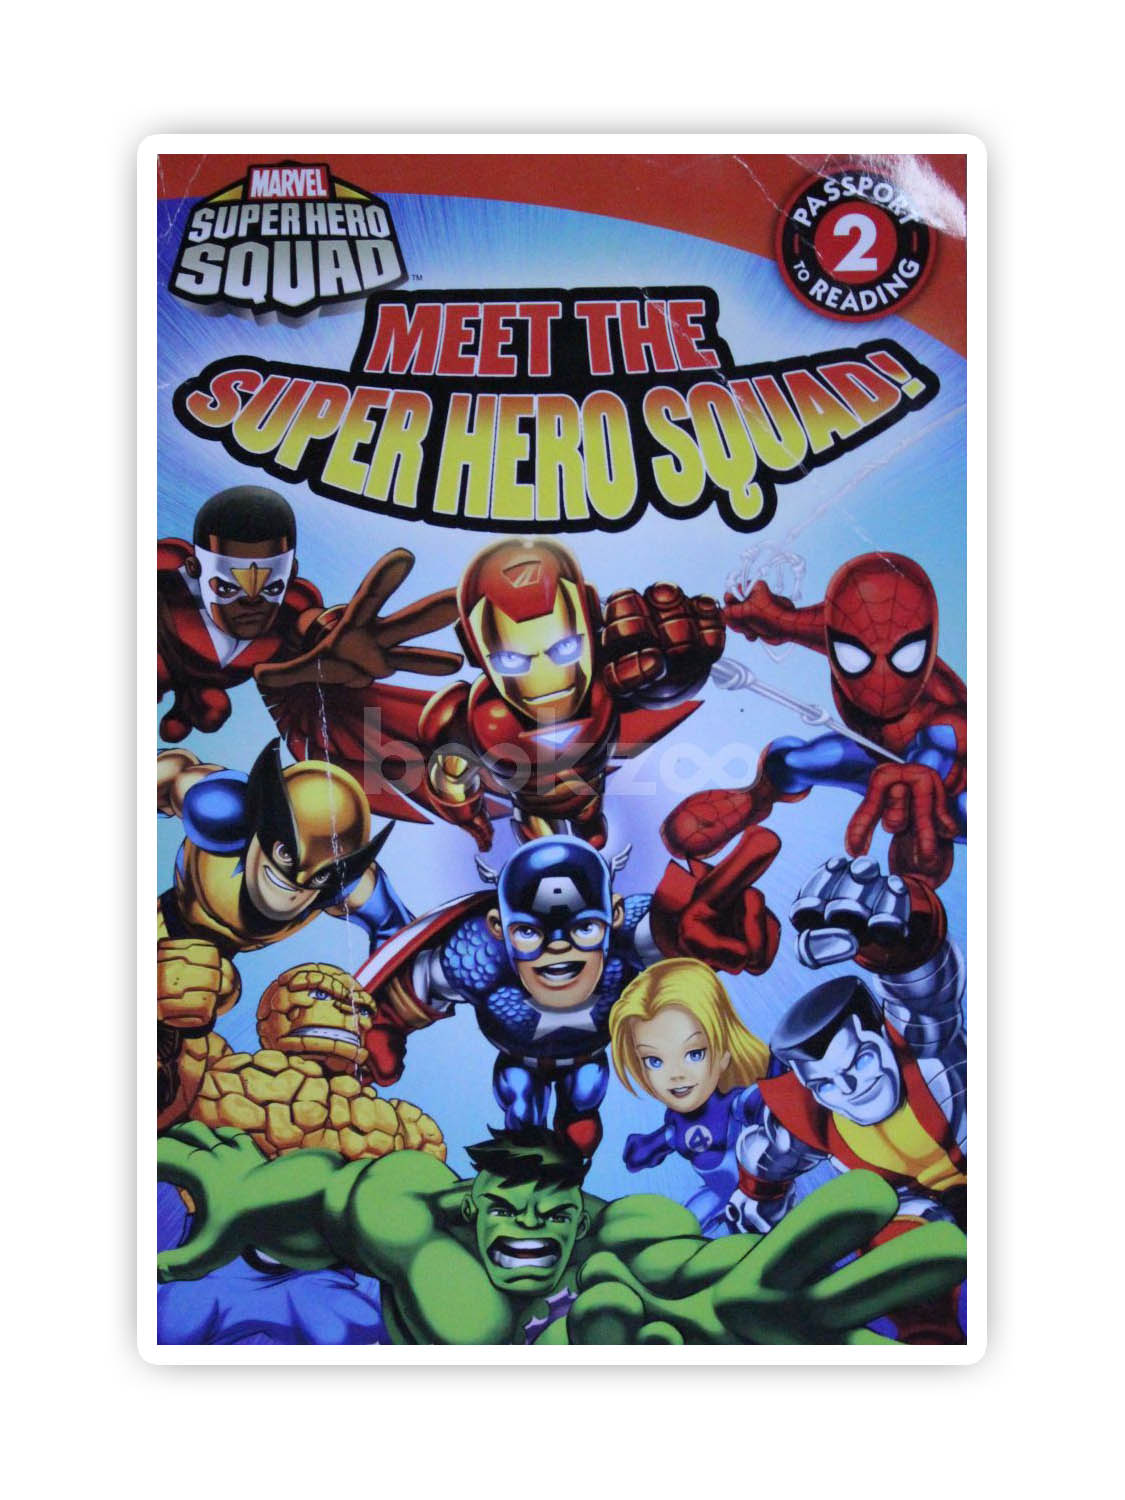 Dario　Super　Meet　Squad　Hero　bookstore　Bruela,　Squad:　Lucy　Squad!　Hero　Online　Readers)　Buy　at　Hero　by　Rosen　Super　Super　(Marvel　the　—